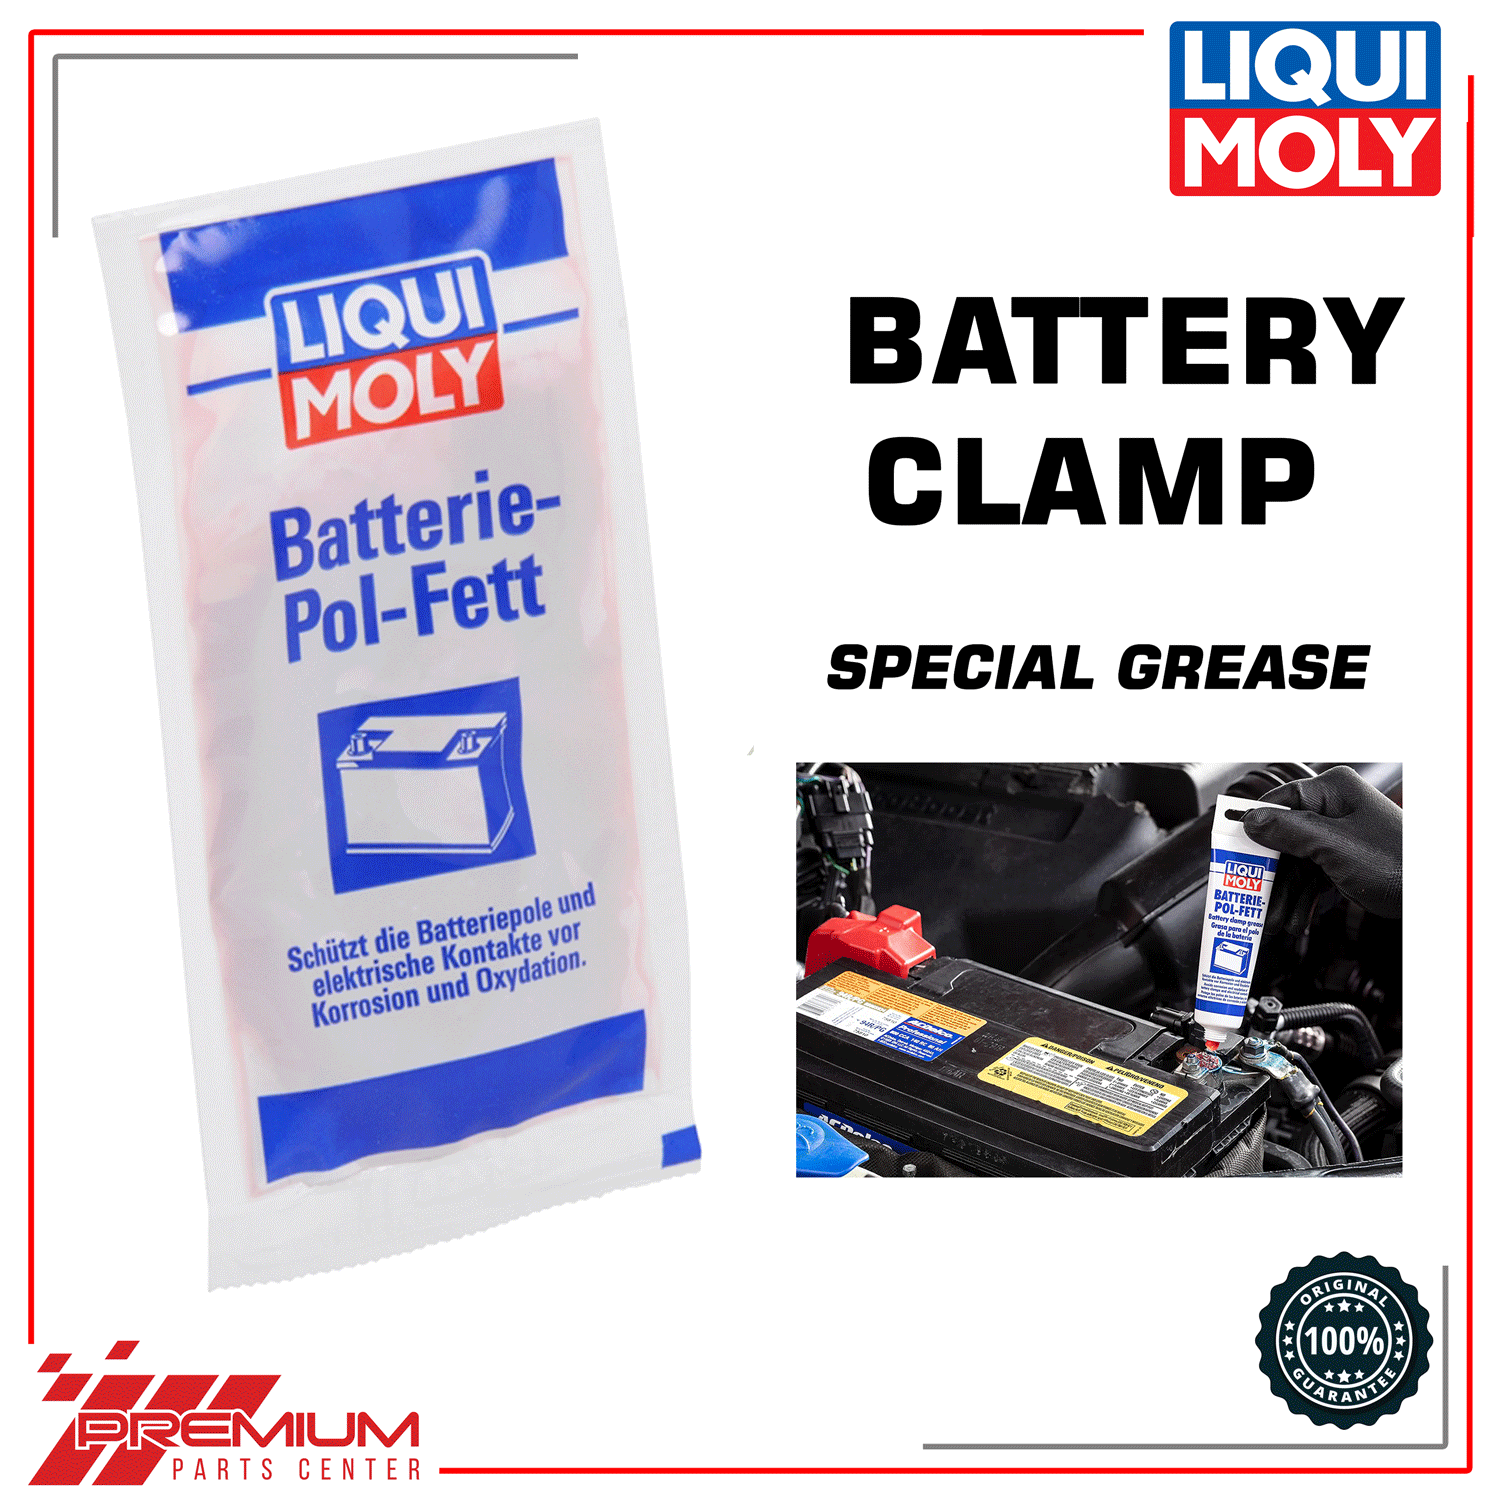 Liqui Moly Battery Clamp Grease 10g Sachet - BATTERIE POL FETT